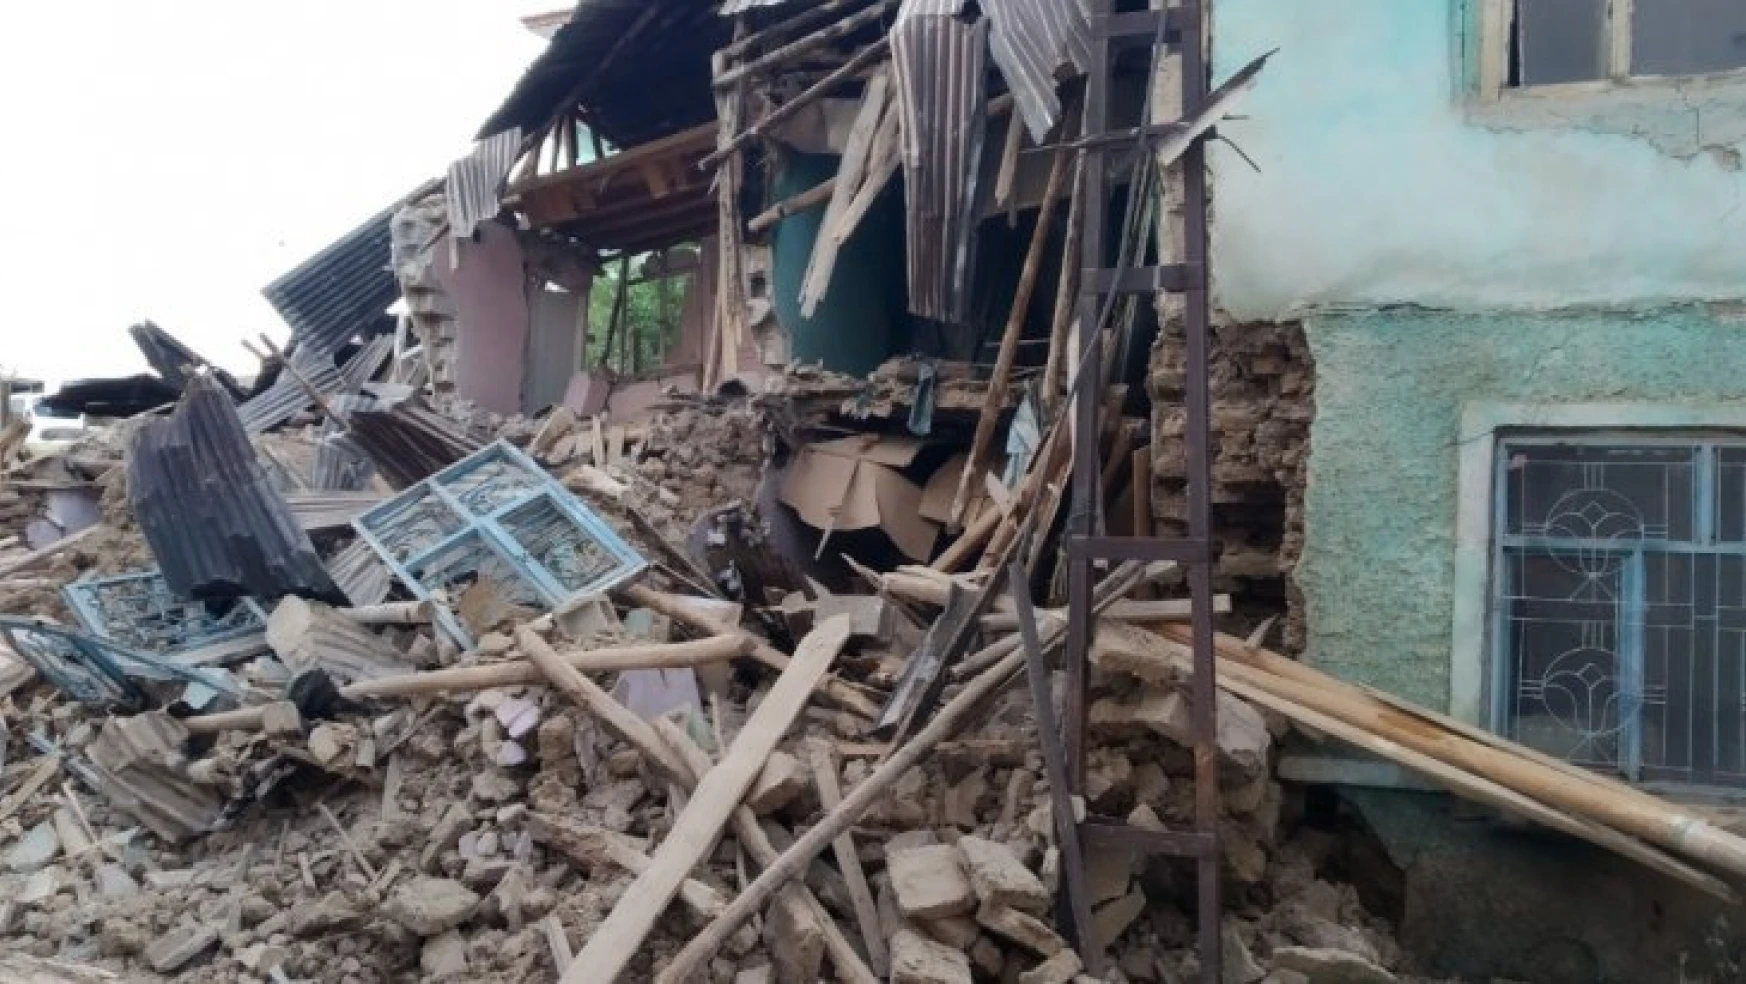 Elazığ'daki şiddetli yağış 2 kerpiç evi yıktı